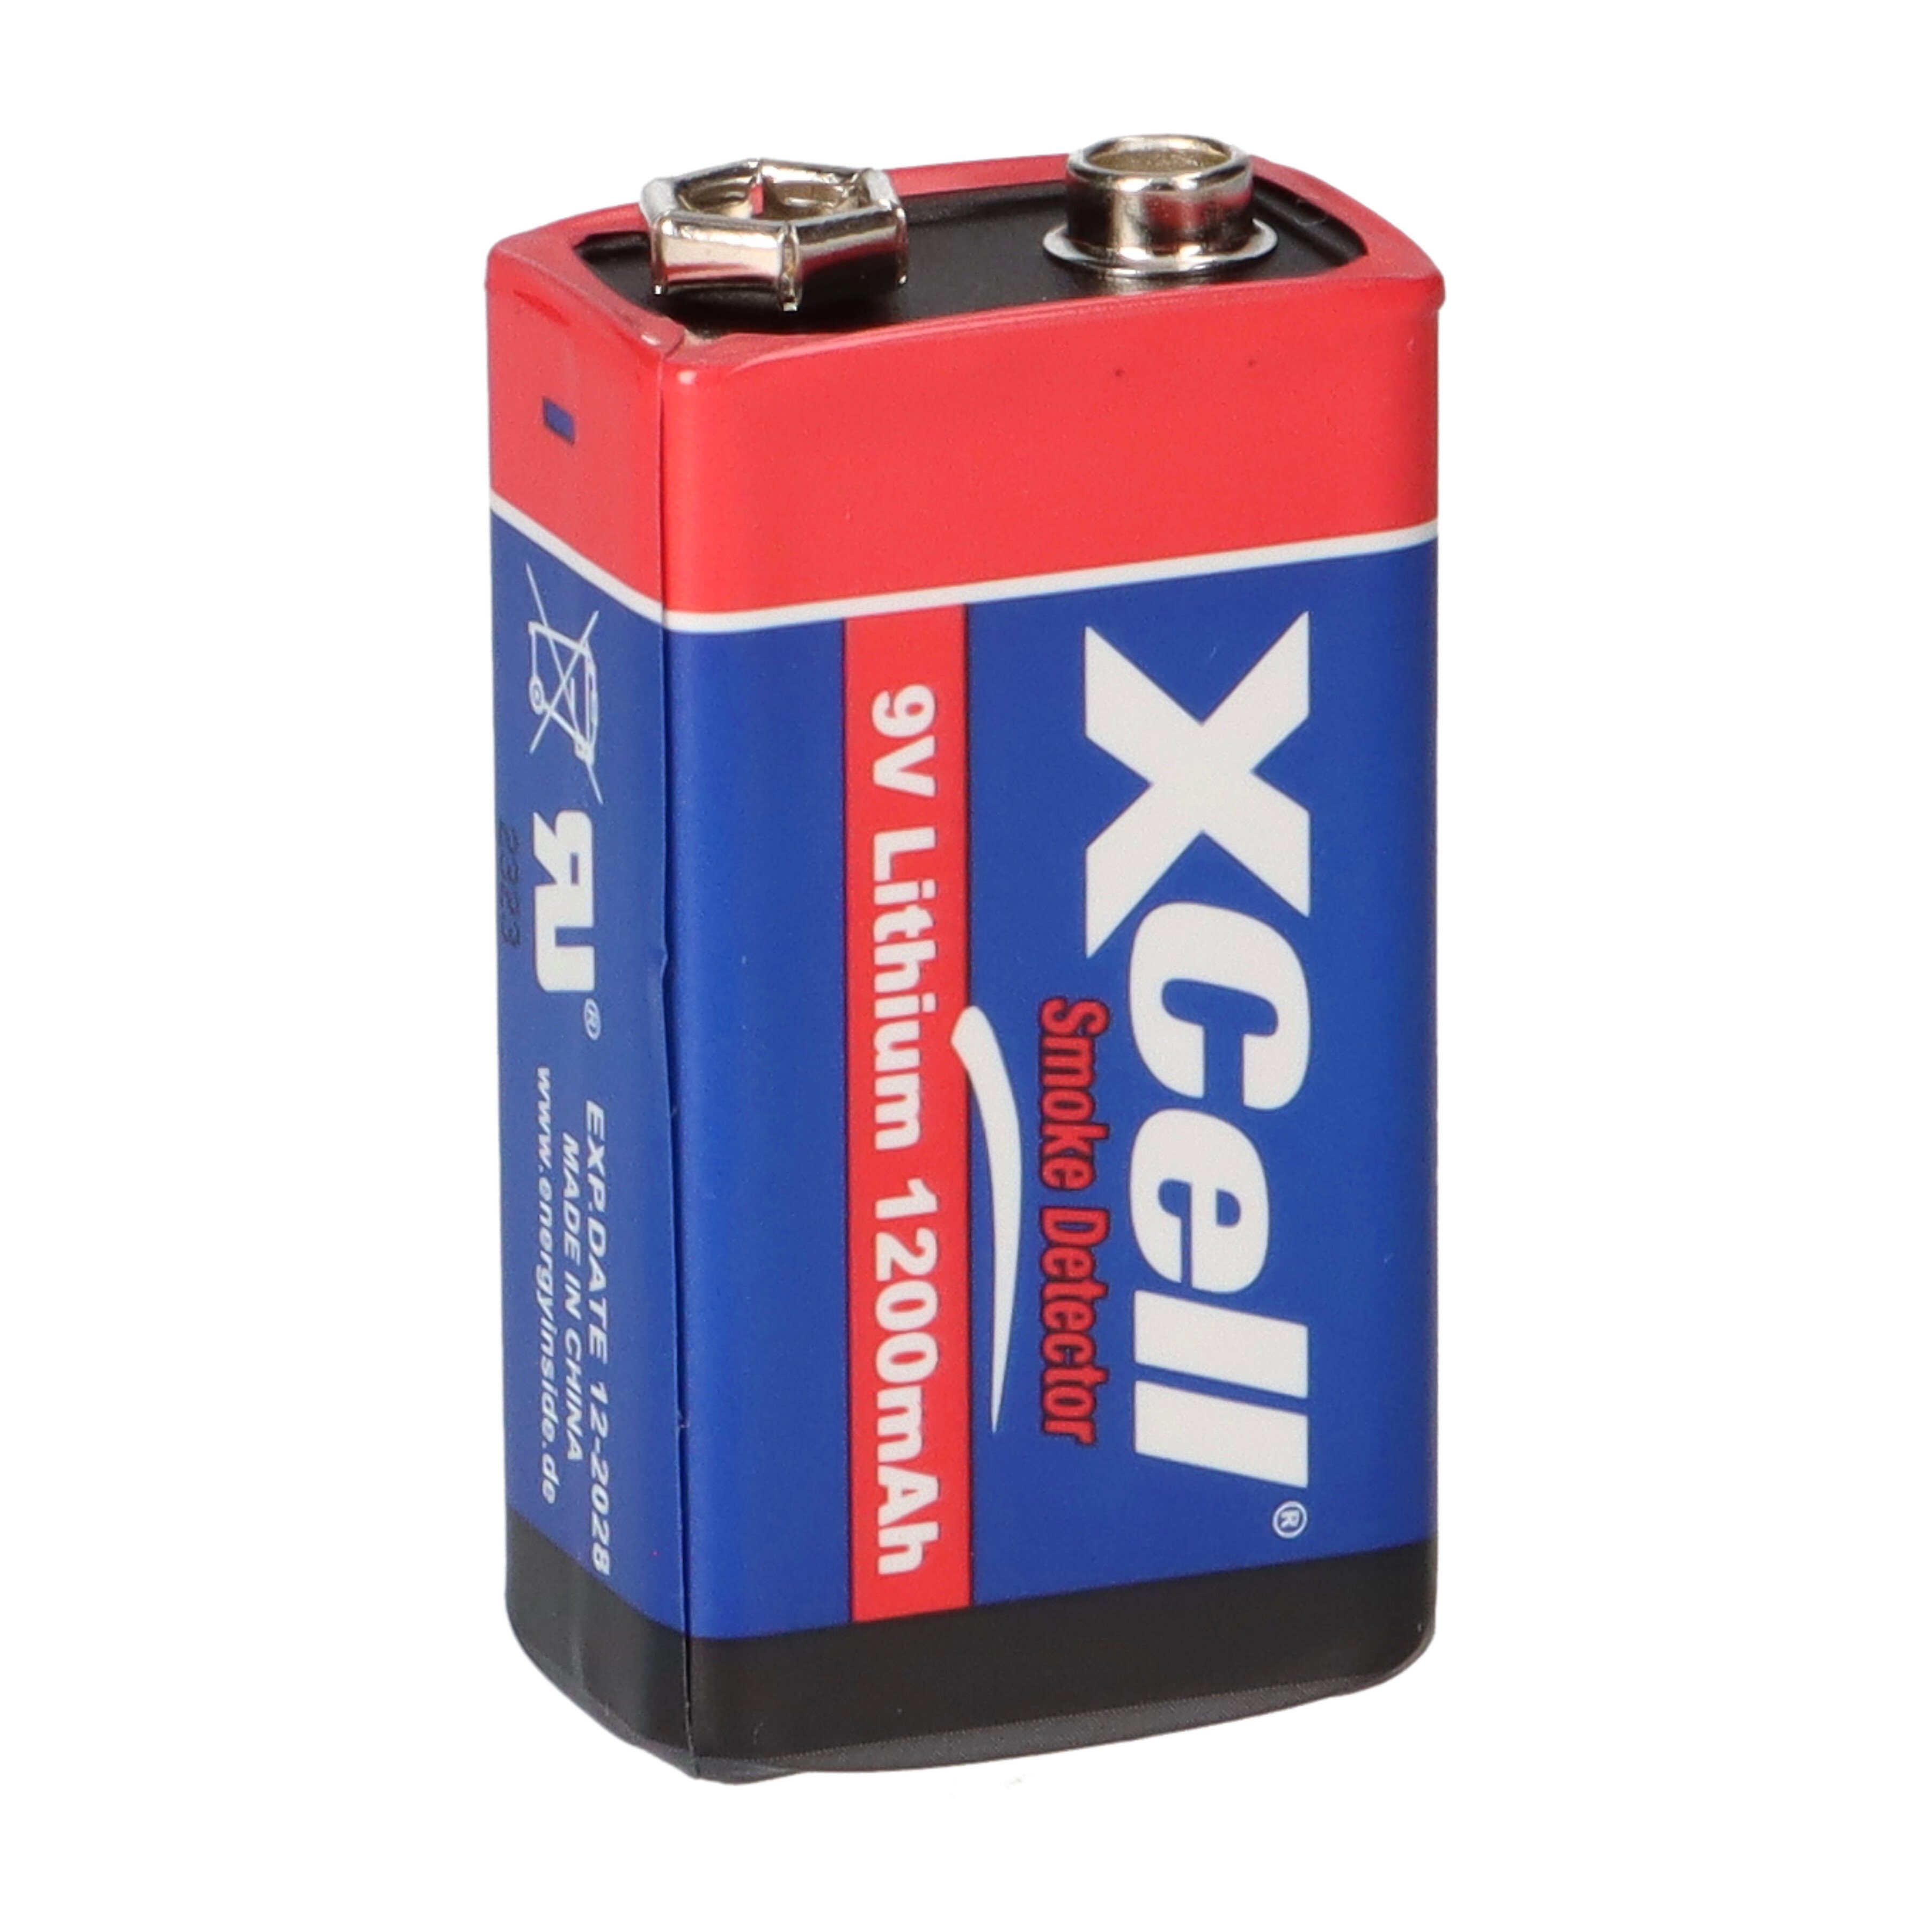 Blister XCell mAh XCell Block 6AM6 10x 1200 Lithium Batterie 9V 1er im